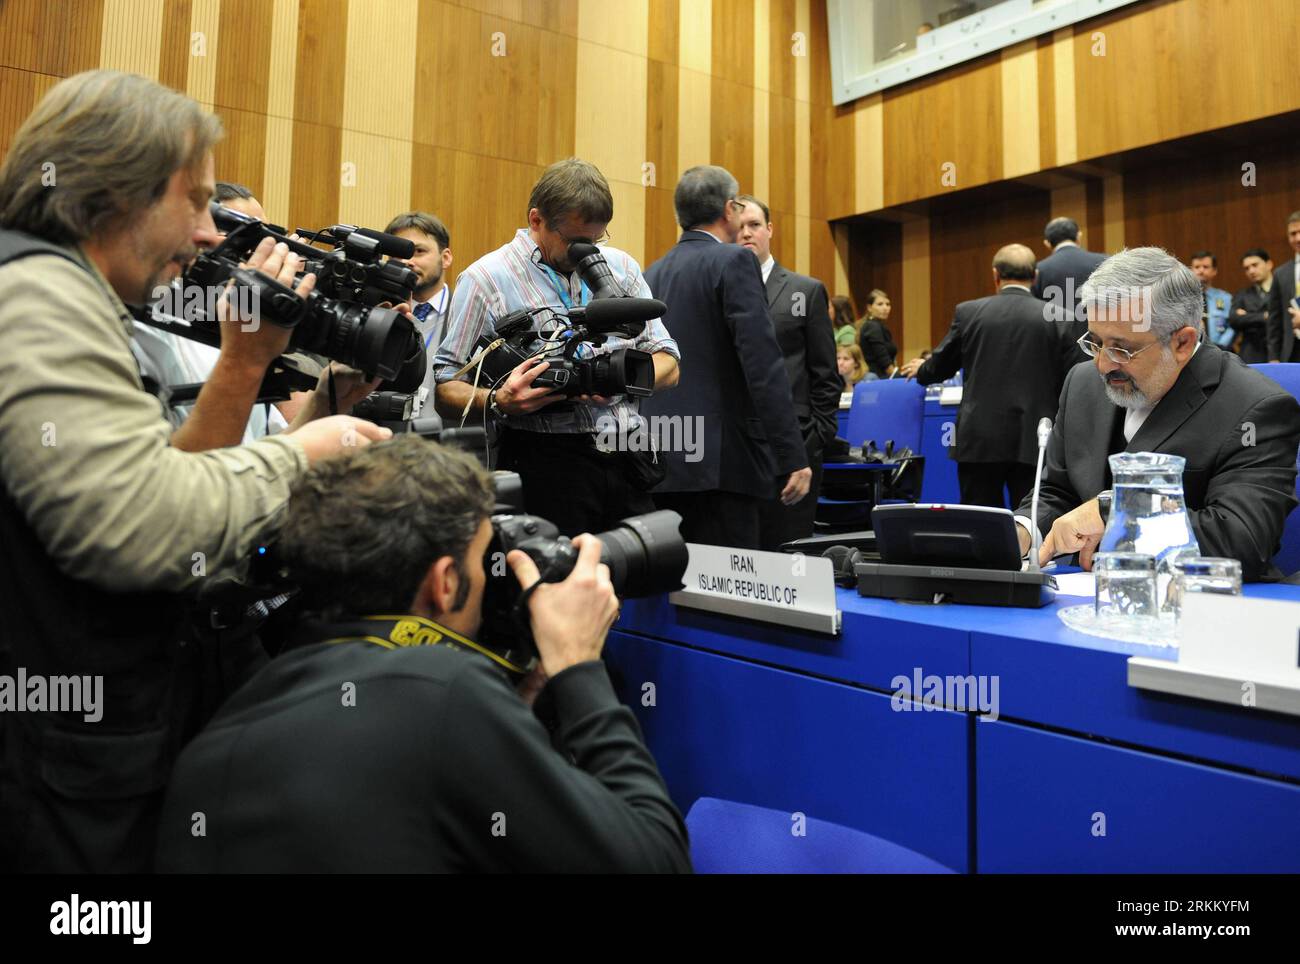 Bildnummer: 56290771 Datum: 17.11.2011 Copyright: imago/Xinhua (111117) -- VIENNA, 17 novembre 2011 (Xinhua) -- giornalisti sparano all'ambasciatore iraniano presso l'AIEA Ali Ashkar Soltaniyeh davanti alla conferenza del Consiglio di amministrazione presso la sede dell'Agenzia internazionale per l'energia atomica (AIEA) a Vienna il 17 novembre 2011. La conferenza di due giorni ha attirato maggiore attenzione in quanto la relazione dell' AIEA dell' 8 novembre indica che l' Iran ha svolto attività rilevanti per lo sviluppo di un ordigno nucleare esplosivo . (Xinhua/Xu Liang) (qs) AUSTRIA-VIENNA-AIEA PUBLICATIONxNOTxINxCHN People Politik IAEO Inter Foto Stock